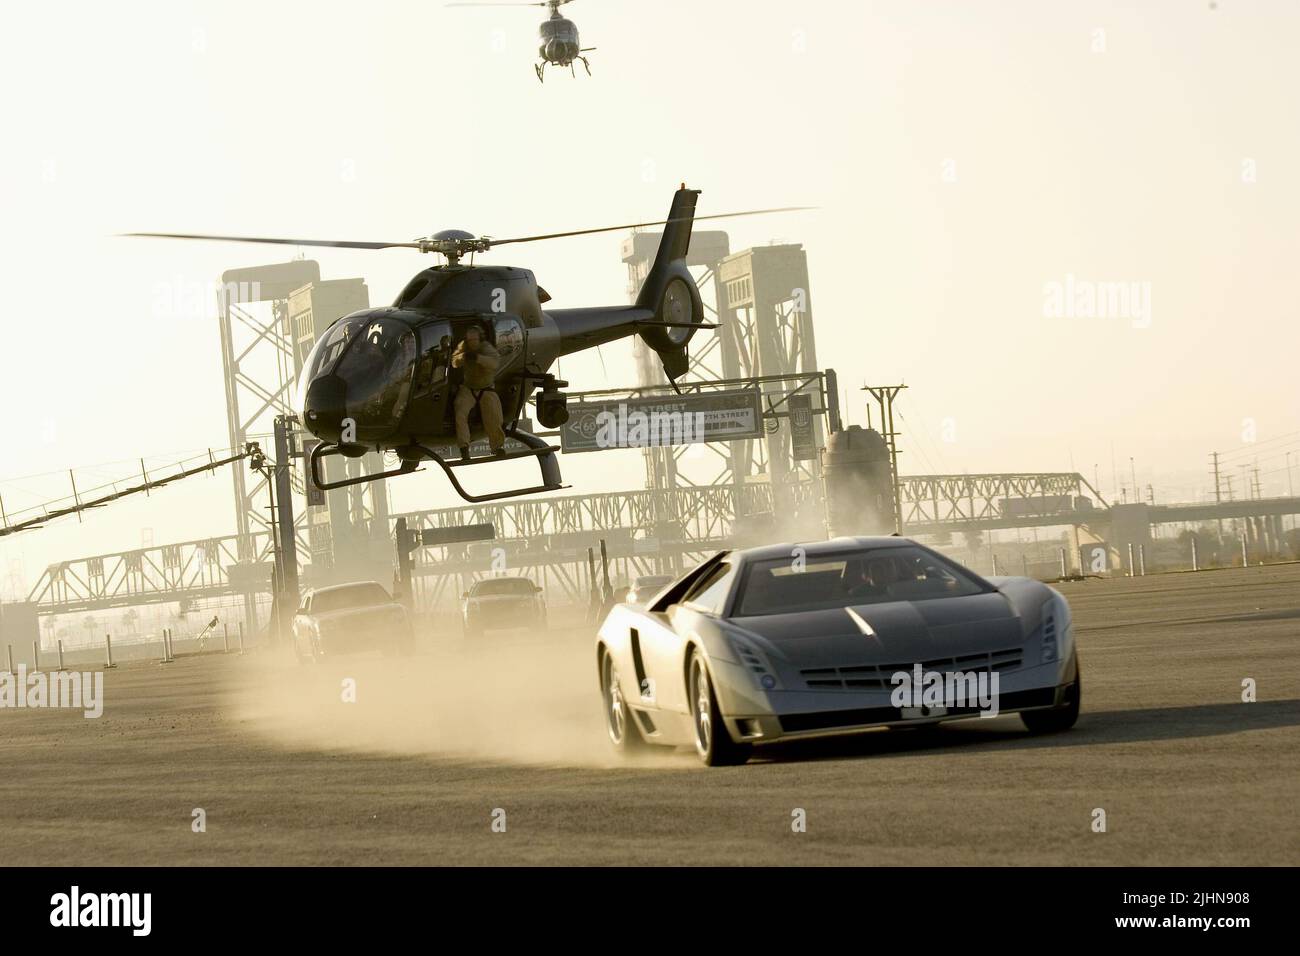 Hélicoptère, scène de poursuite de voiture, l'île, 2005 Banque D'Images